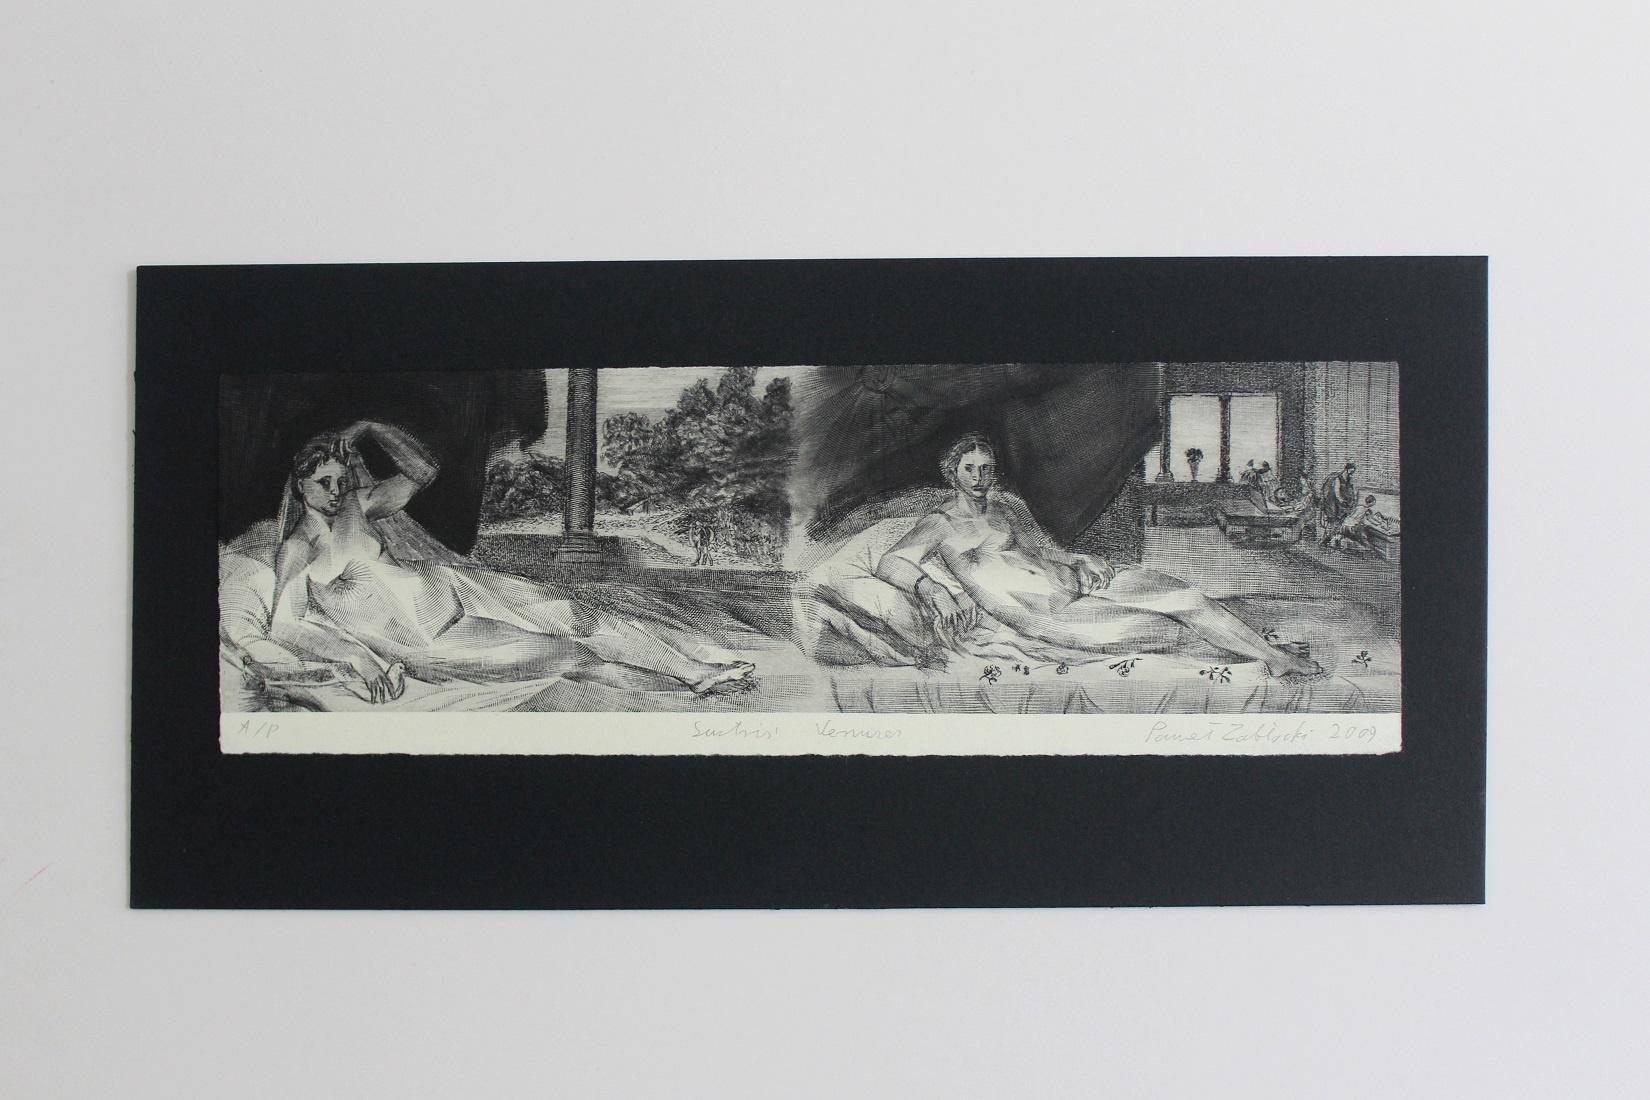 Vénus de Sustris - Impression figurative contemporaine à l'eau-forte, nu, paysage - Print de Pawel Zablocki